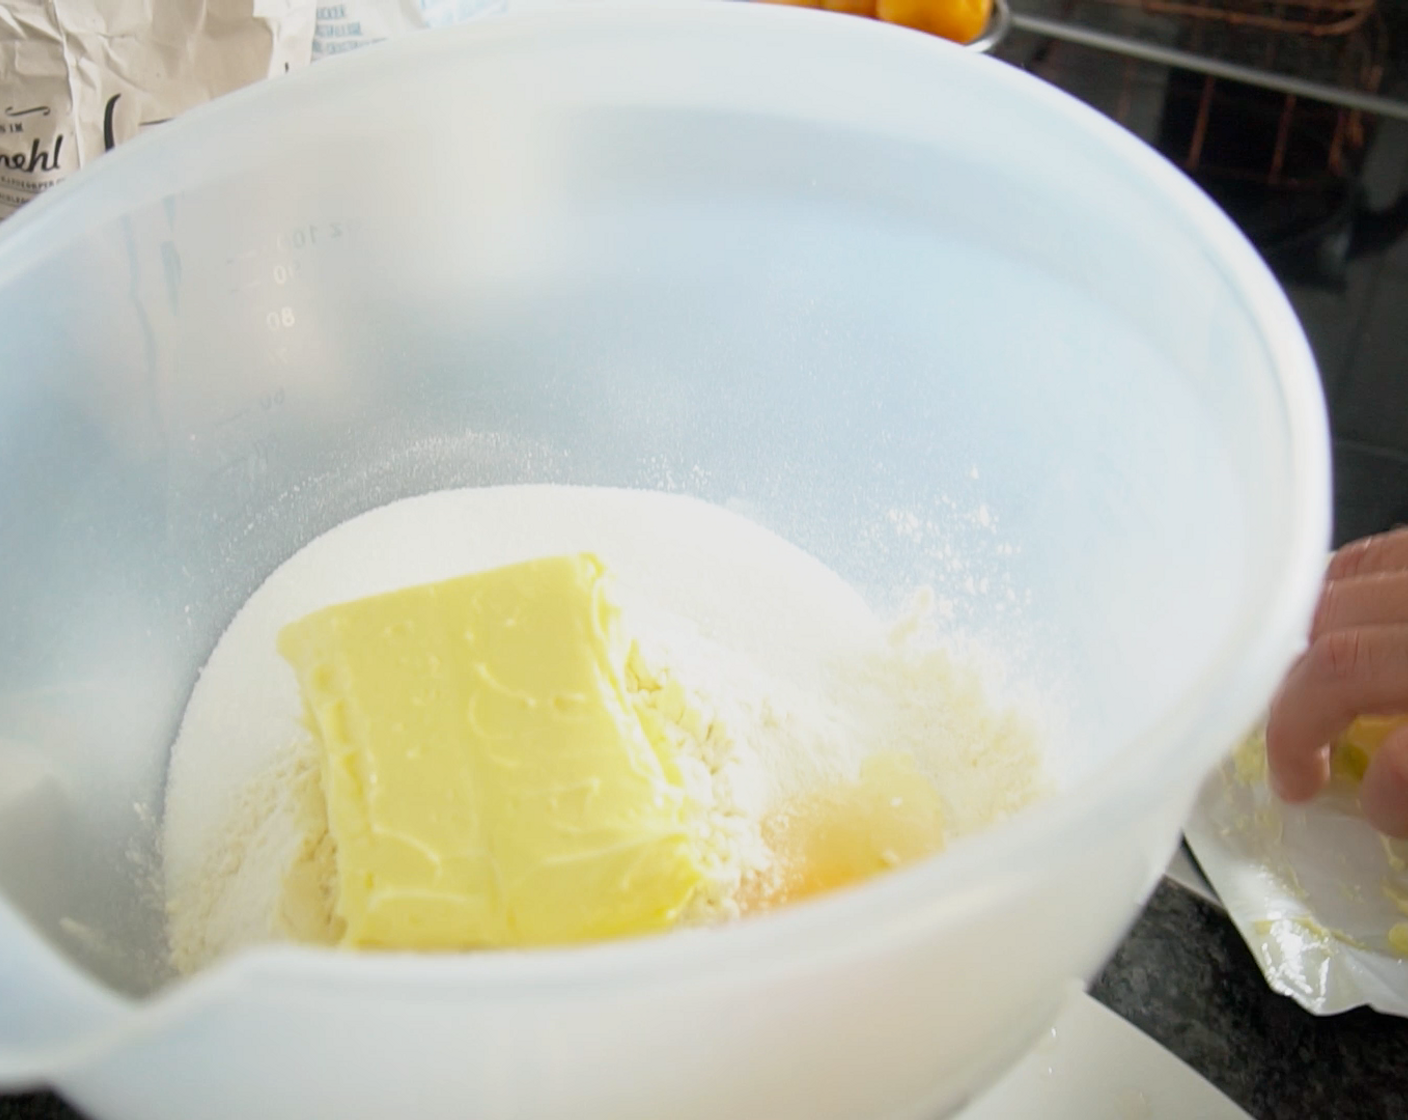 Schritt 1 Teig: Mehl (300 g), Zucker (100 g), Butter (220 g), Ei (1) und Salz (1 Pr.) zu einem glatten Teig kneten, 20-30 Minuten kühl stellen.